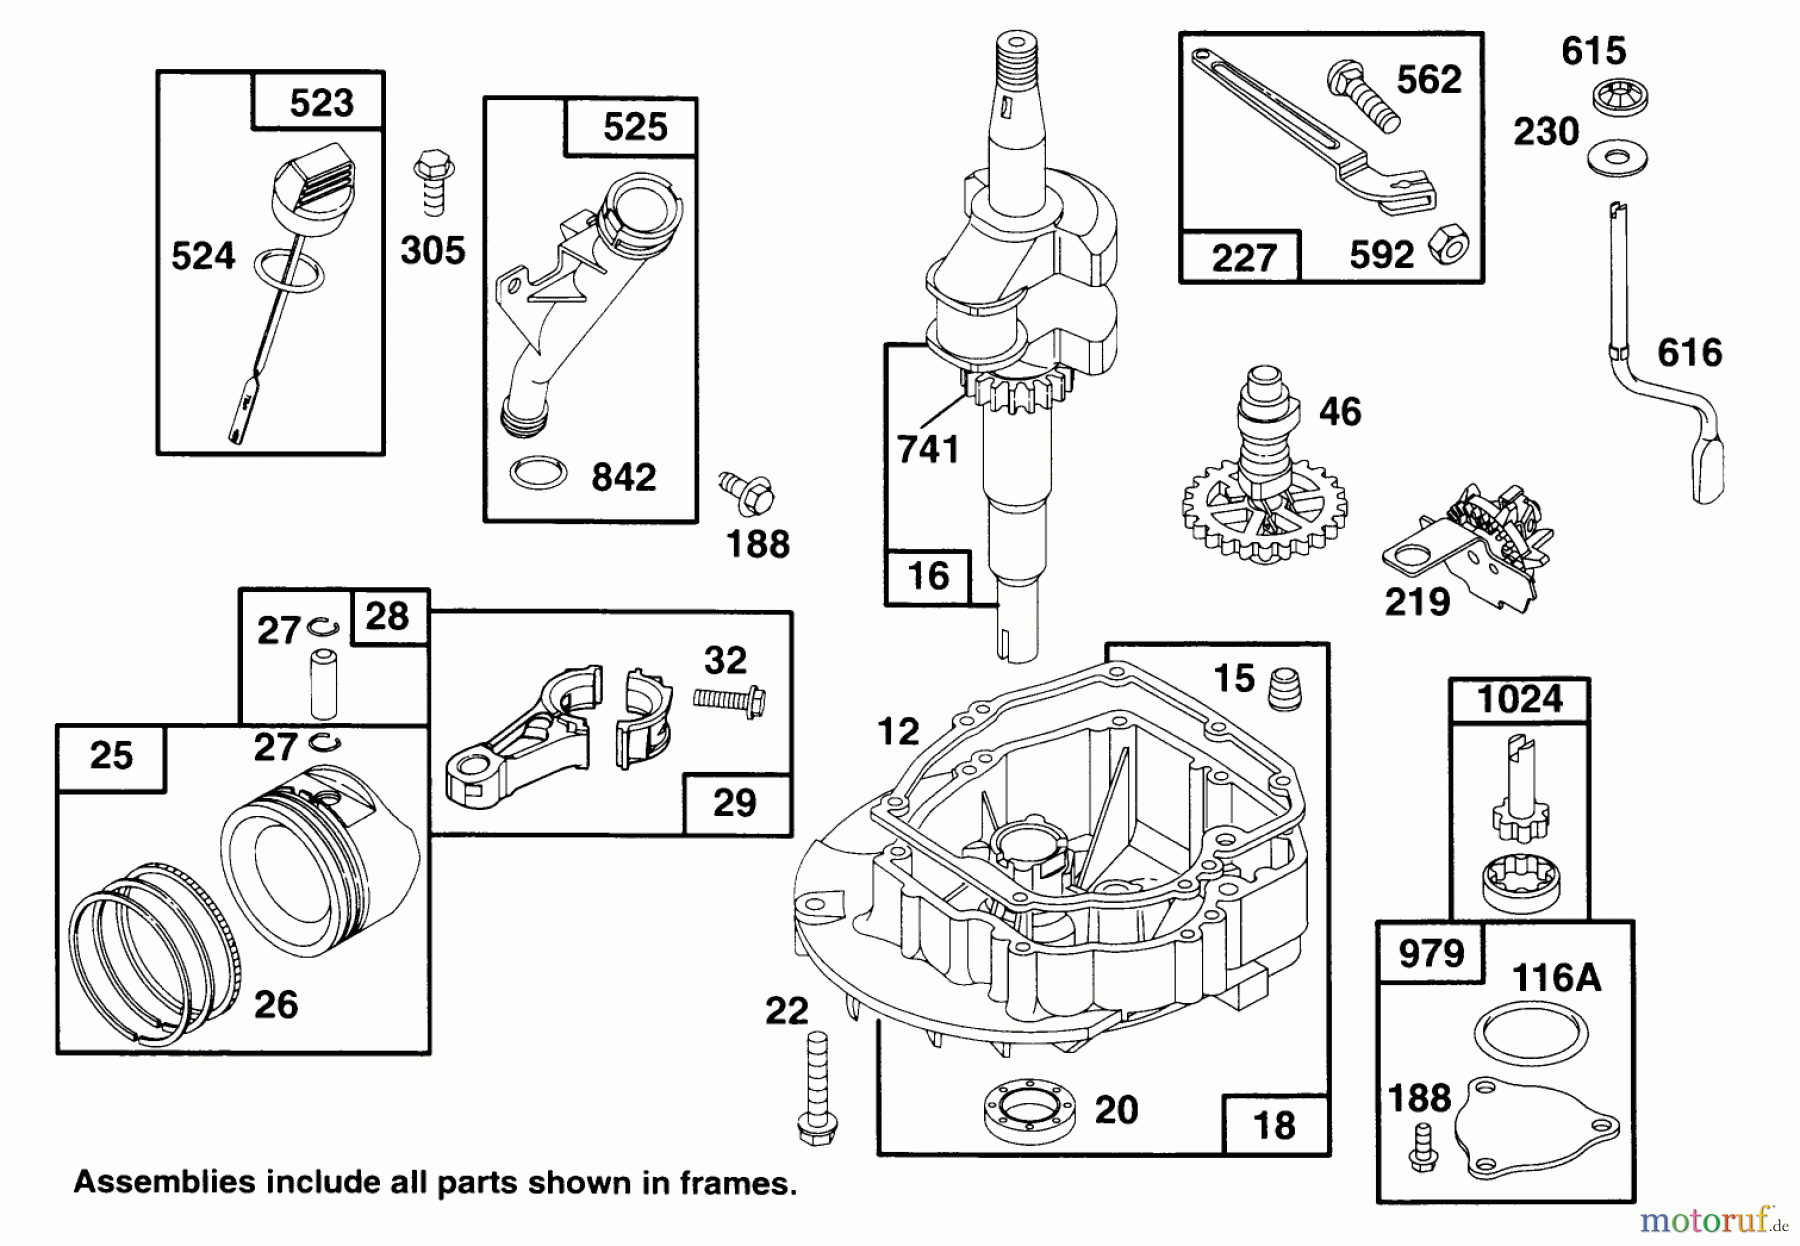  Toro Neu Mowers, Walk-Behind Seite 2 22150 - Toro Lawnmower, 1996 (6900001-6999999) ENGINE GTS 150 #2